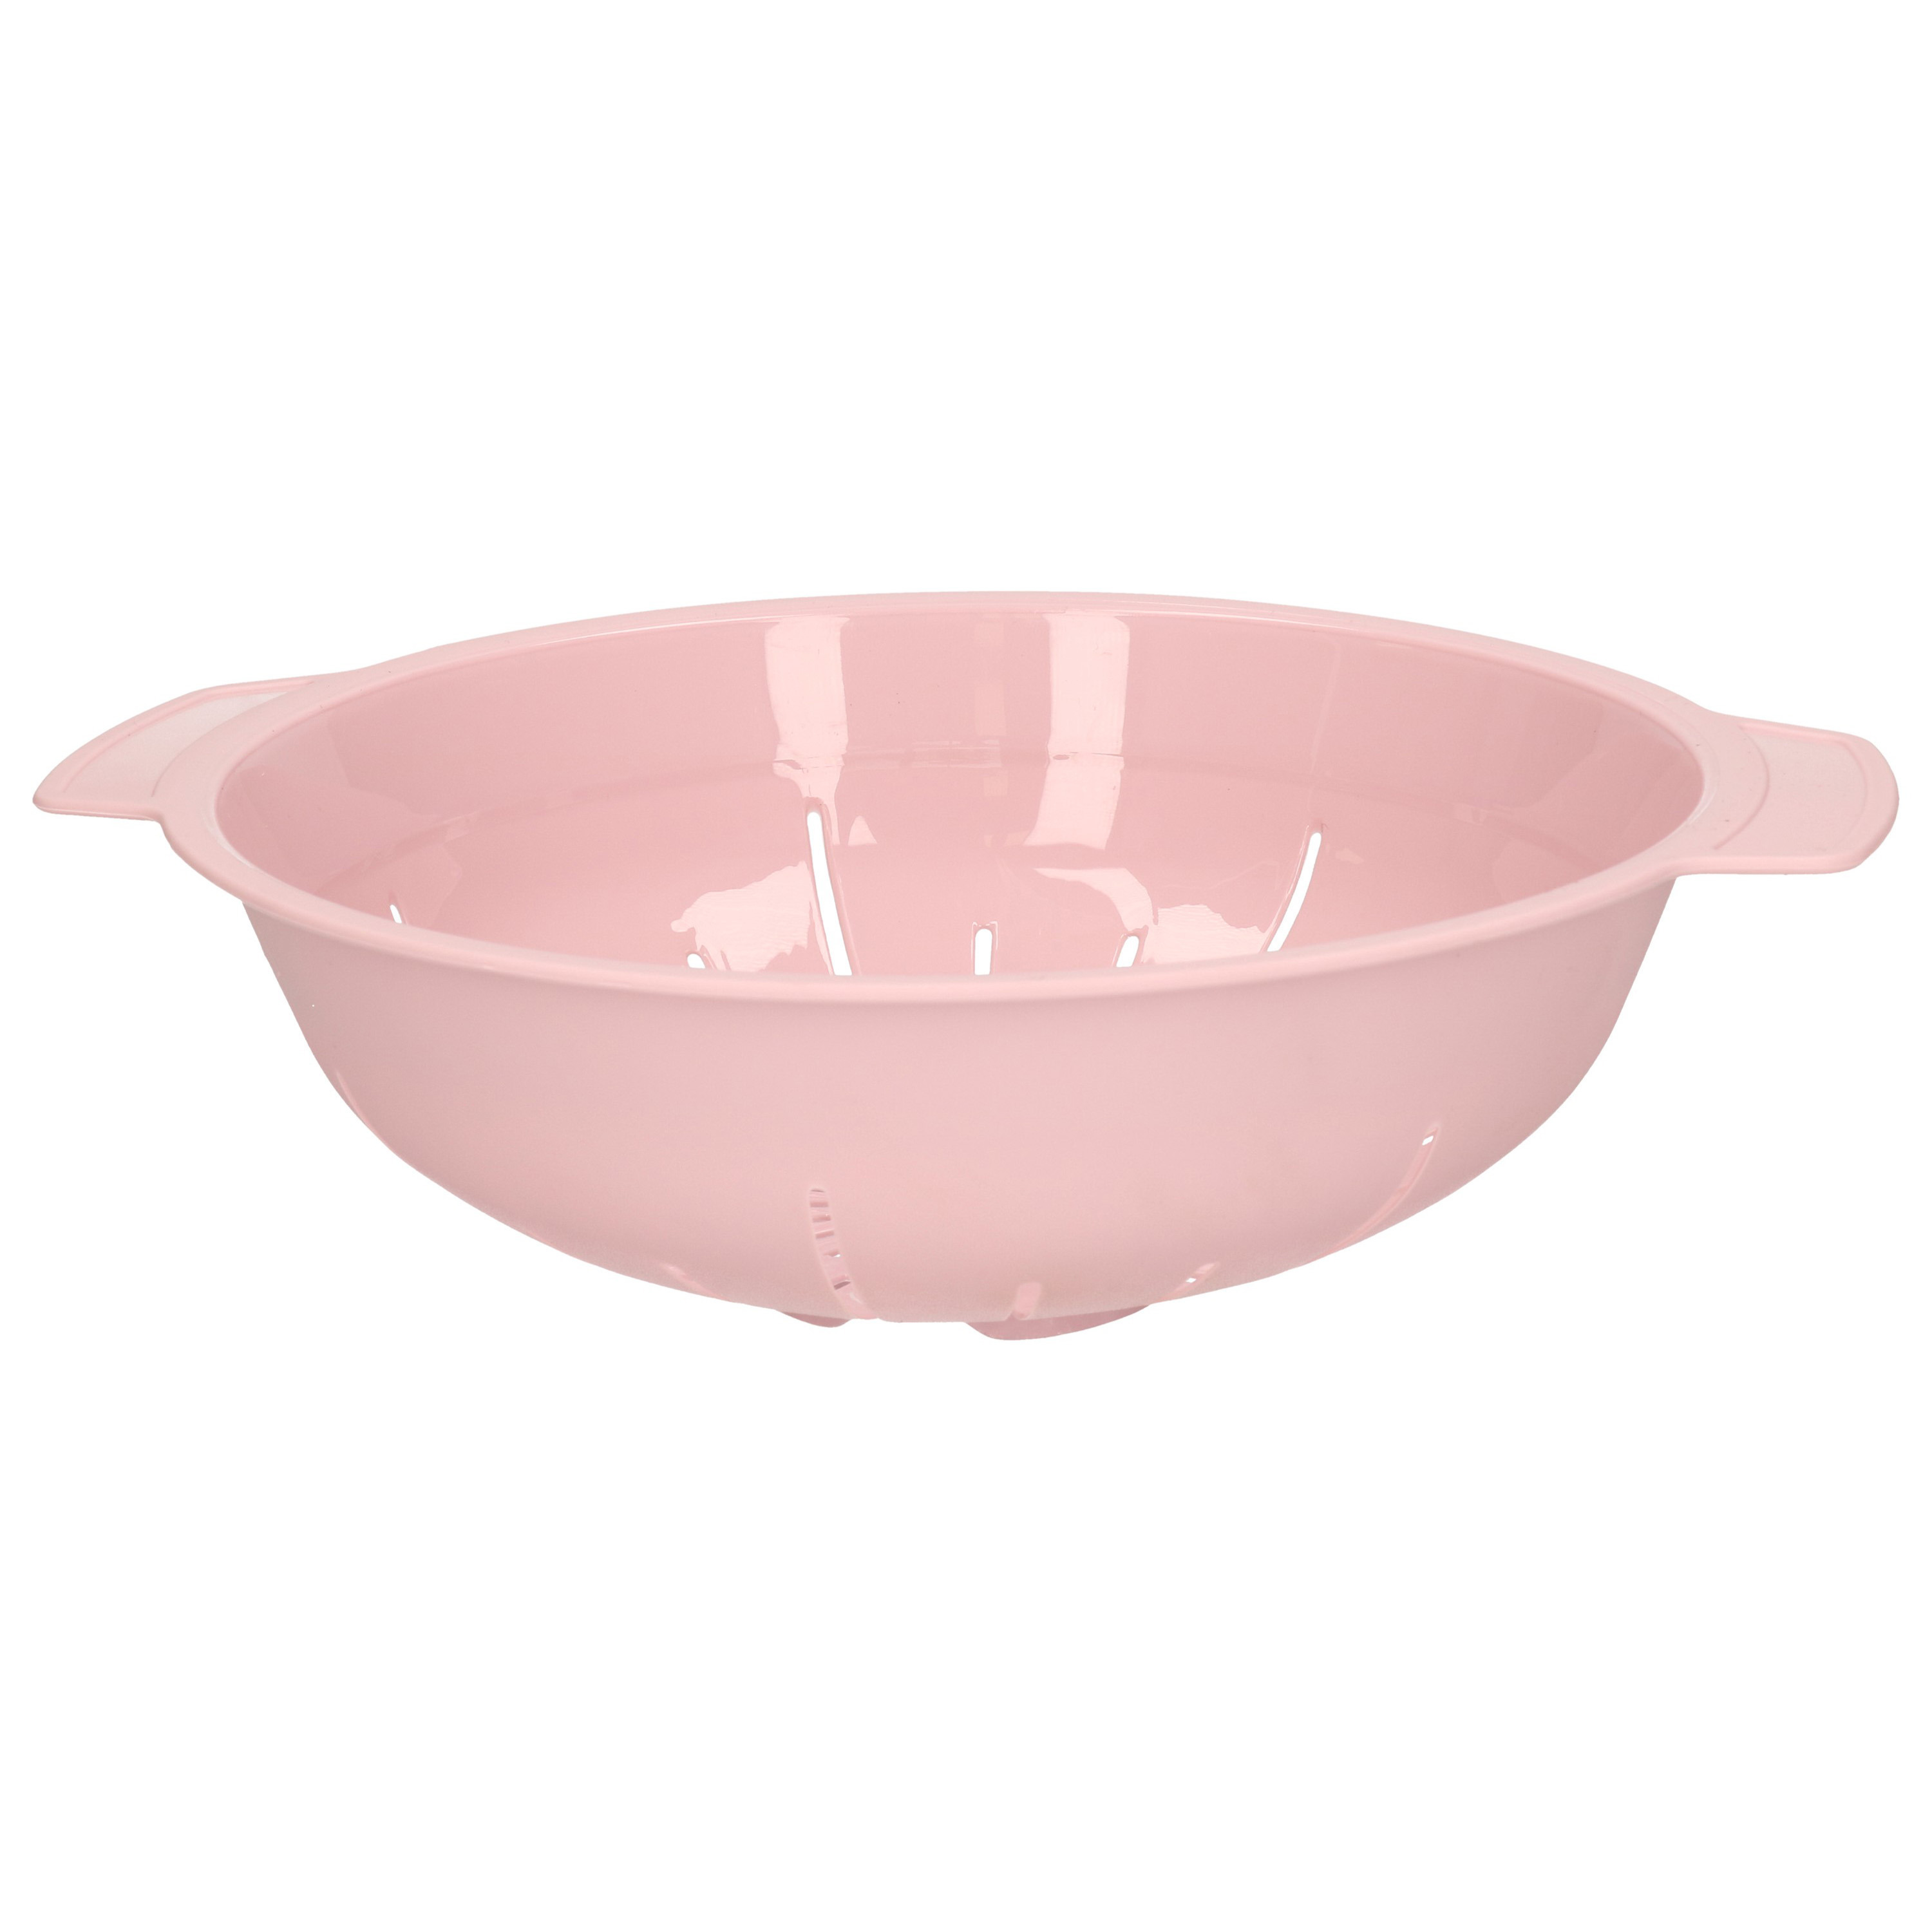 Keuken vergiet-zeef kunststof Dia 25 cm x Hoogte 8 cm roze